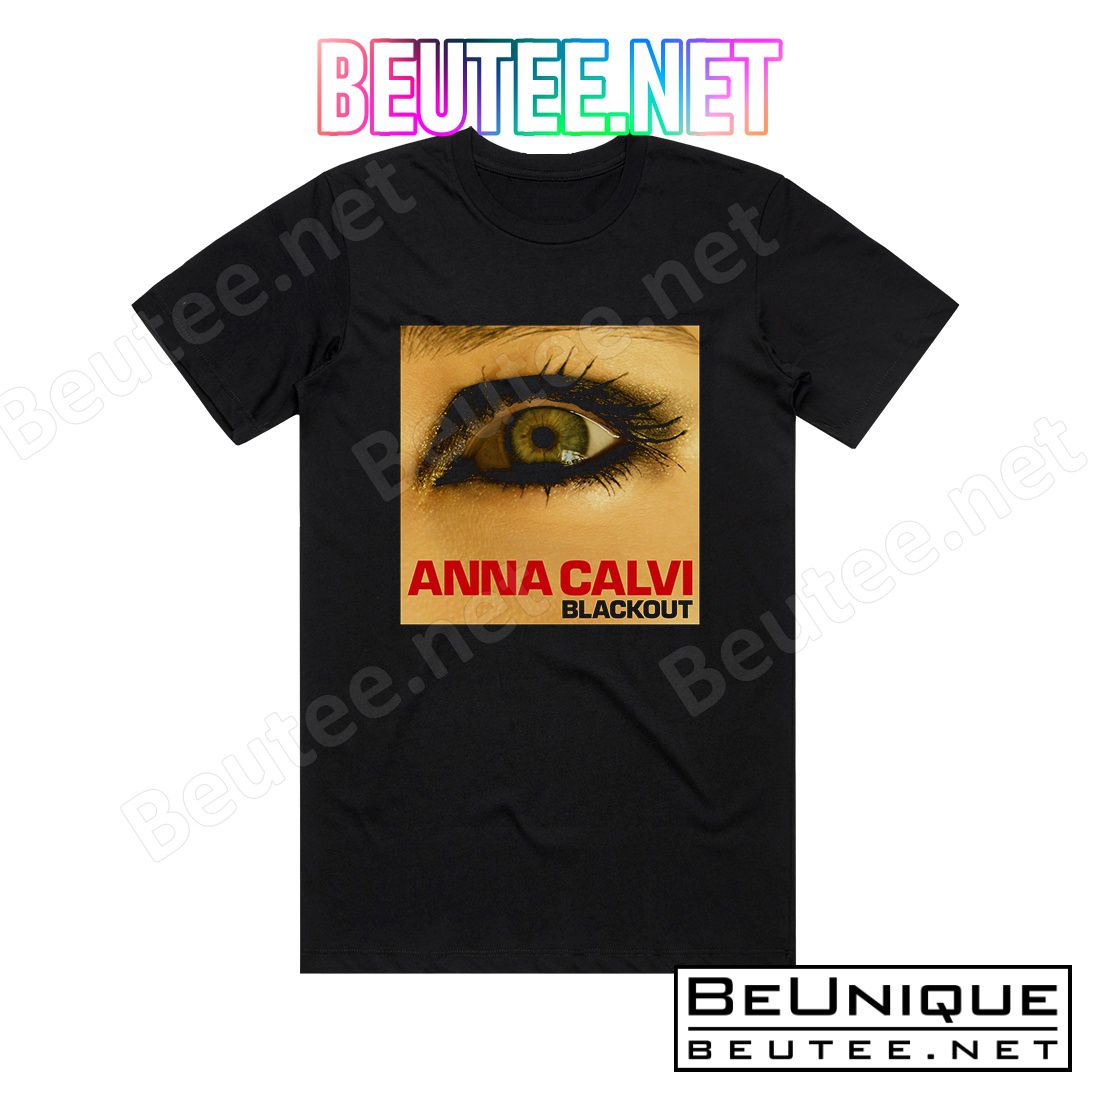 Anna Calvi Blackout Album Cover T-Shirt